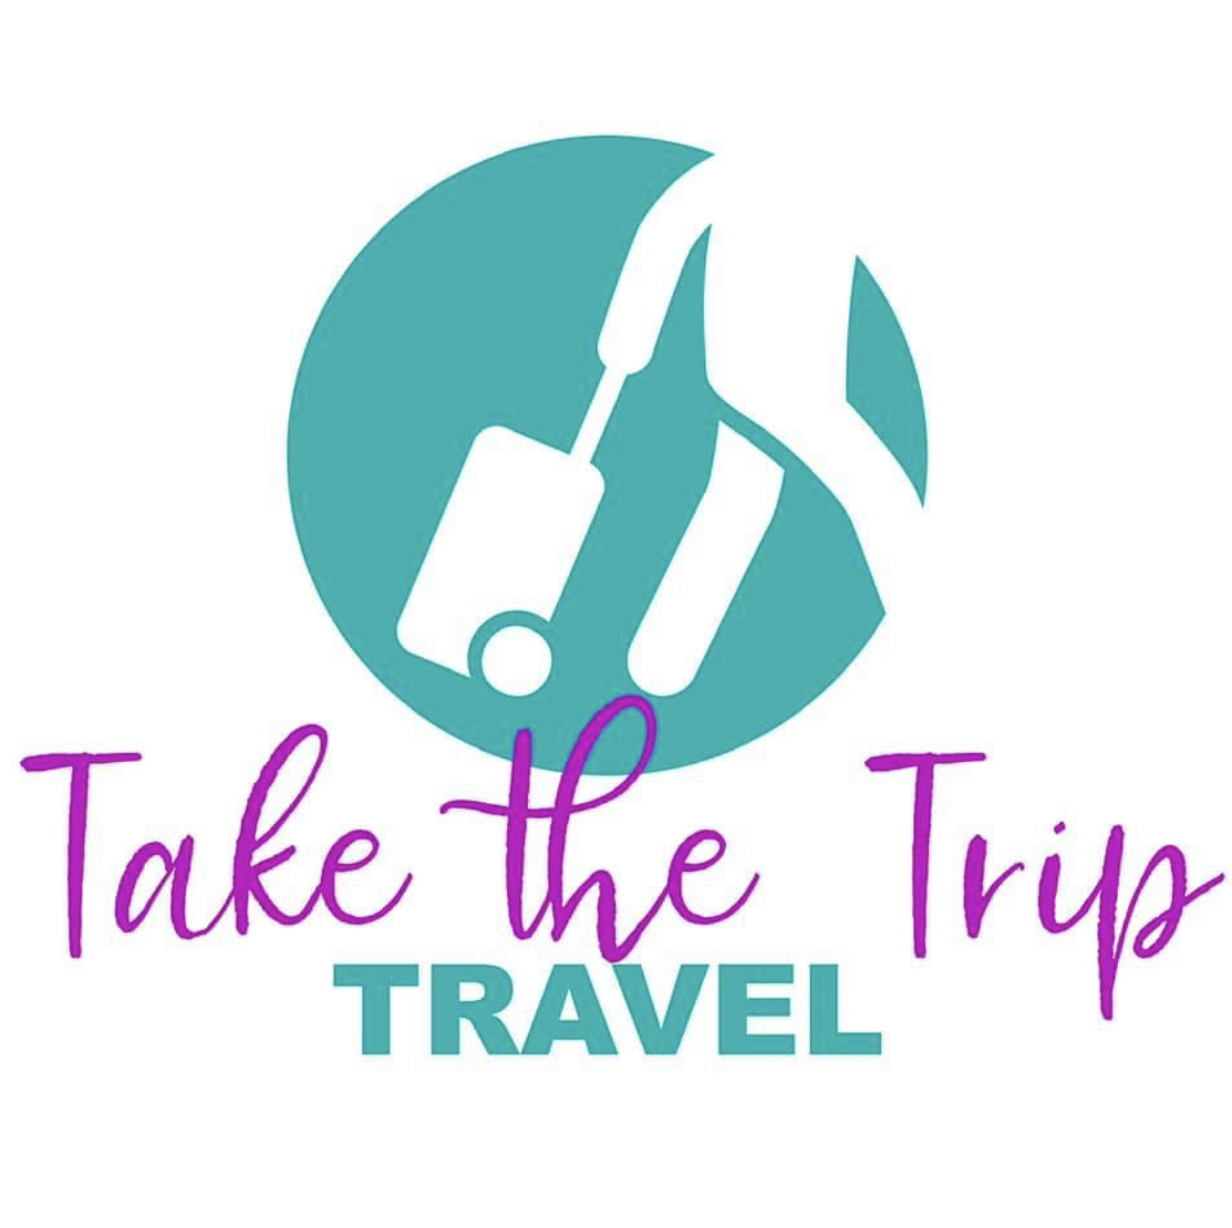 Take The Trip Travel